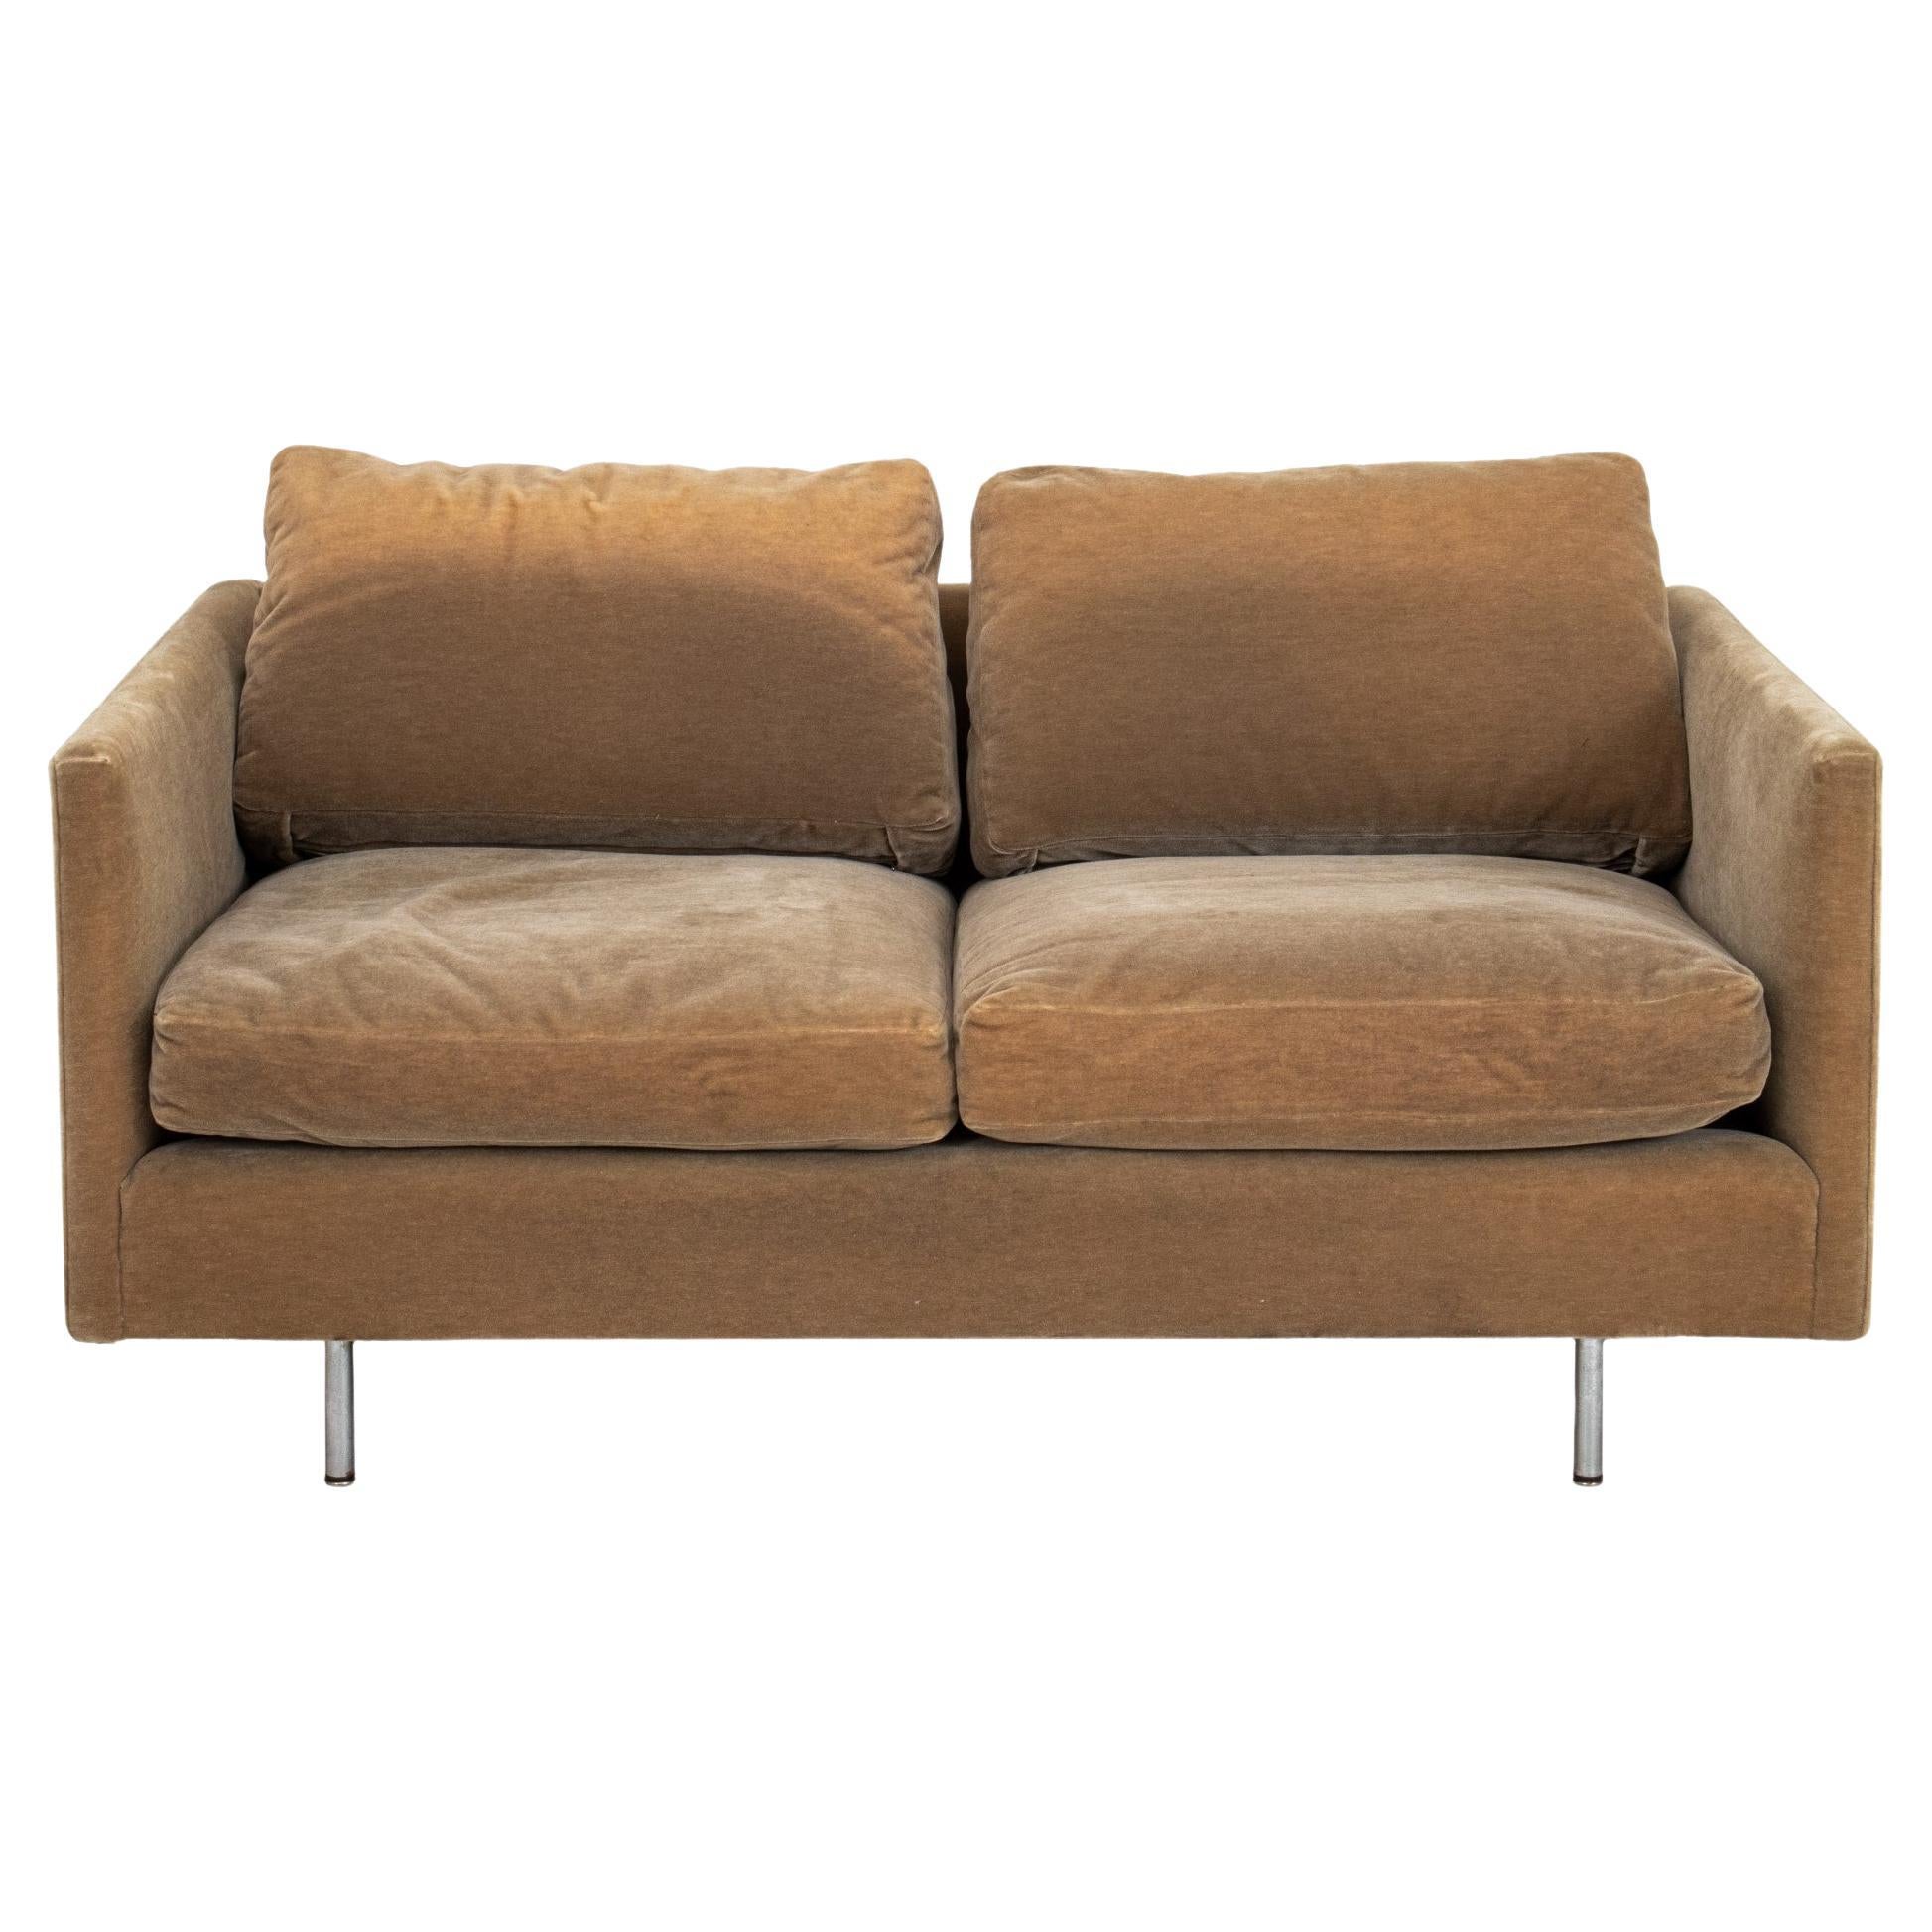 Knoll Style Sage Green Velvet Upholstered Sofa For Sale